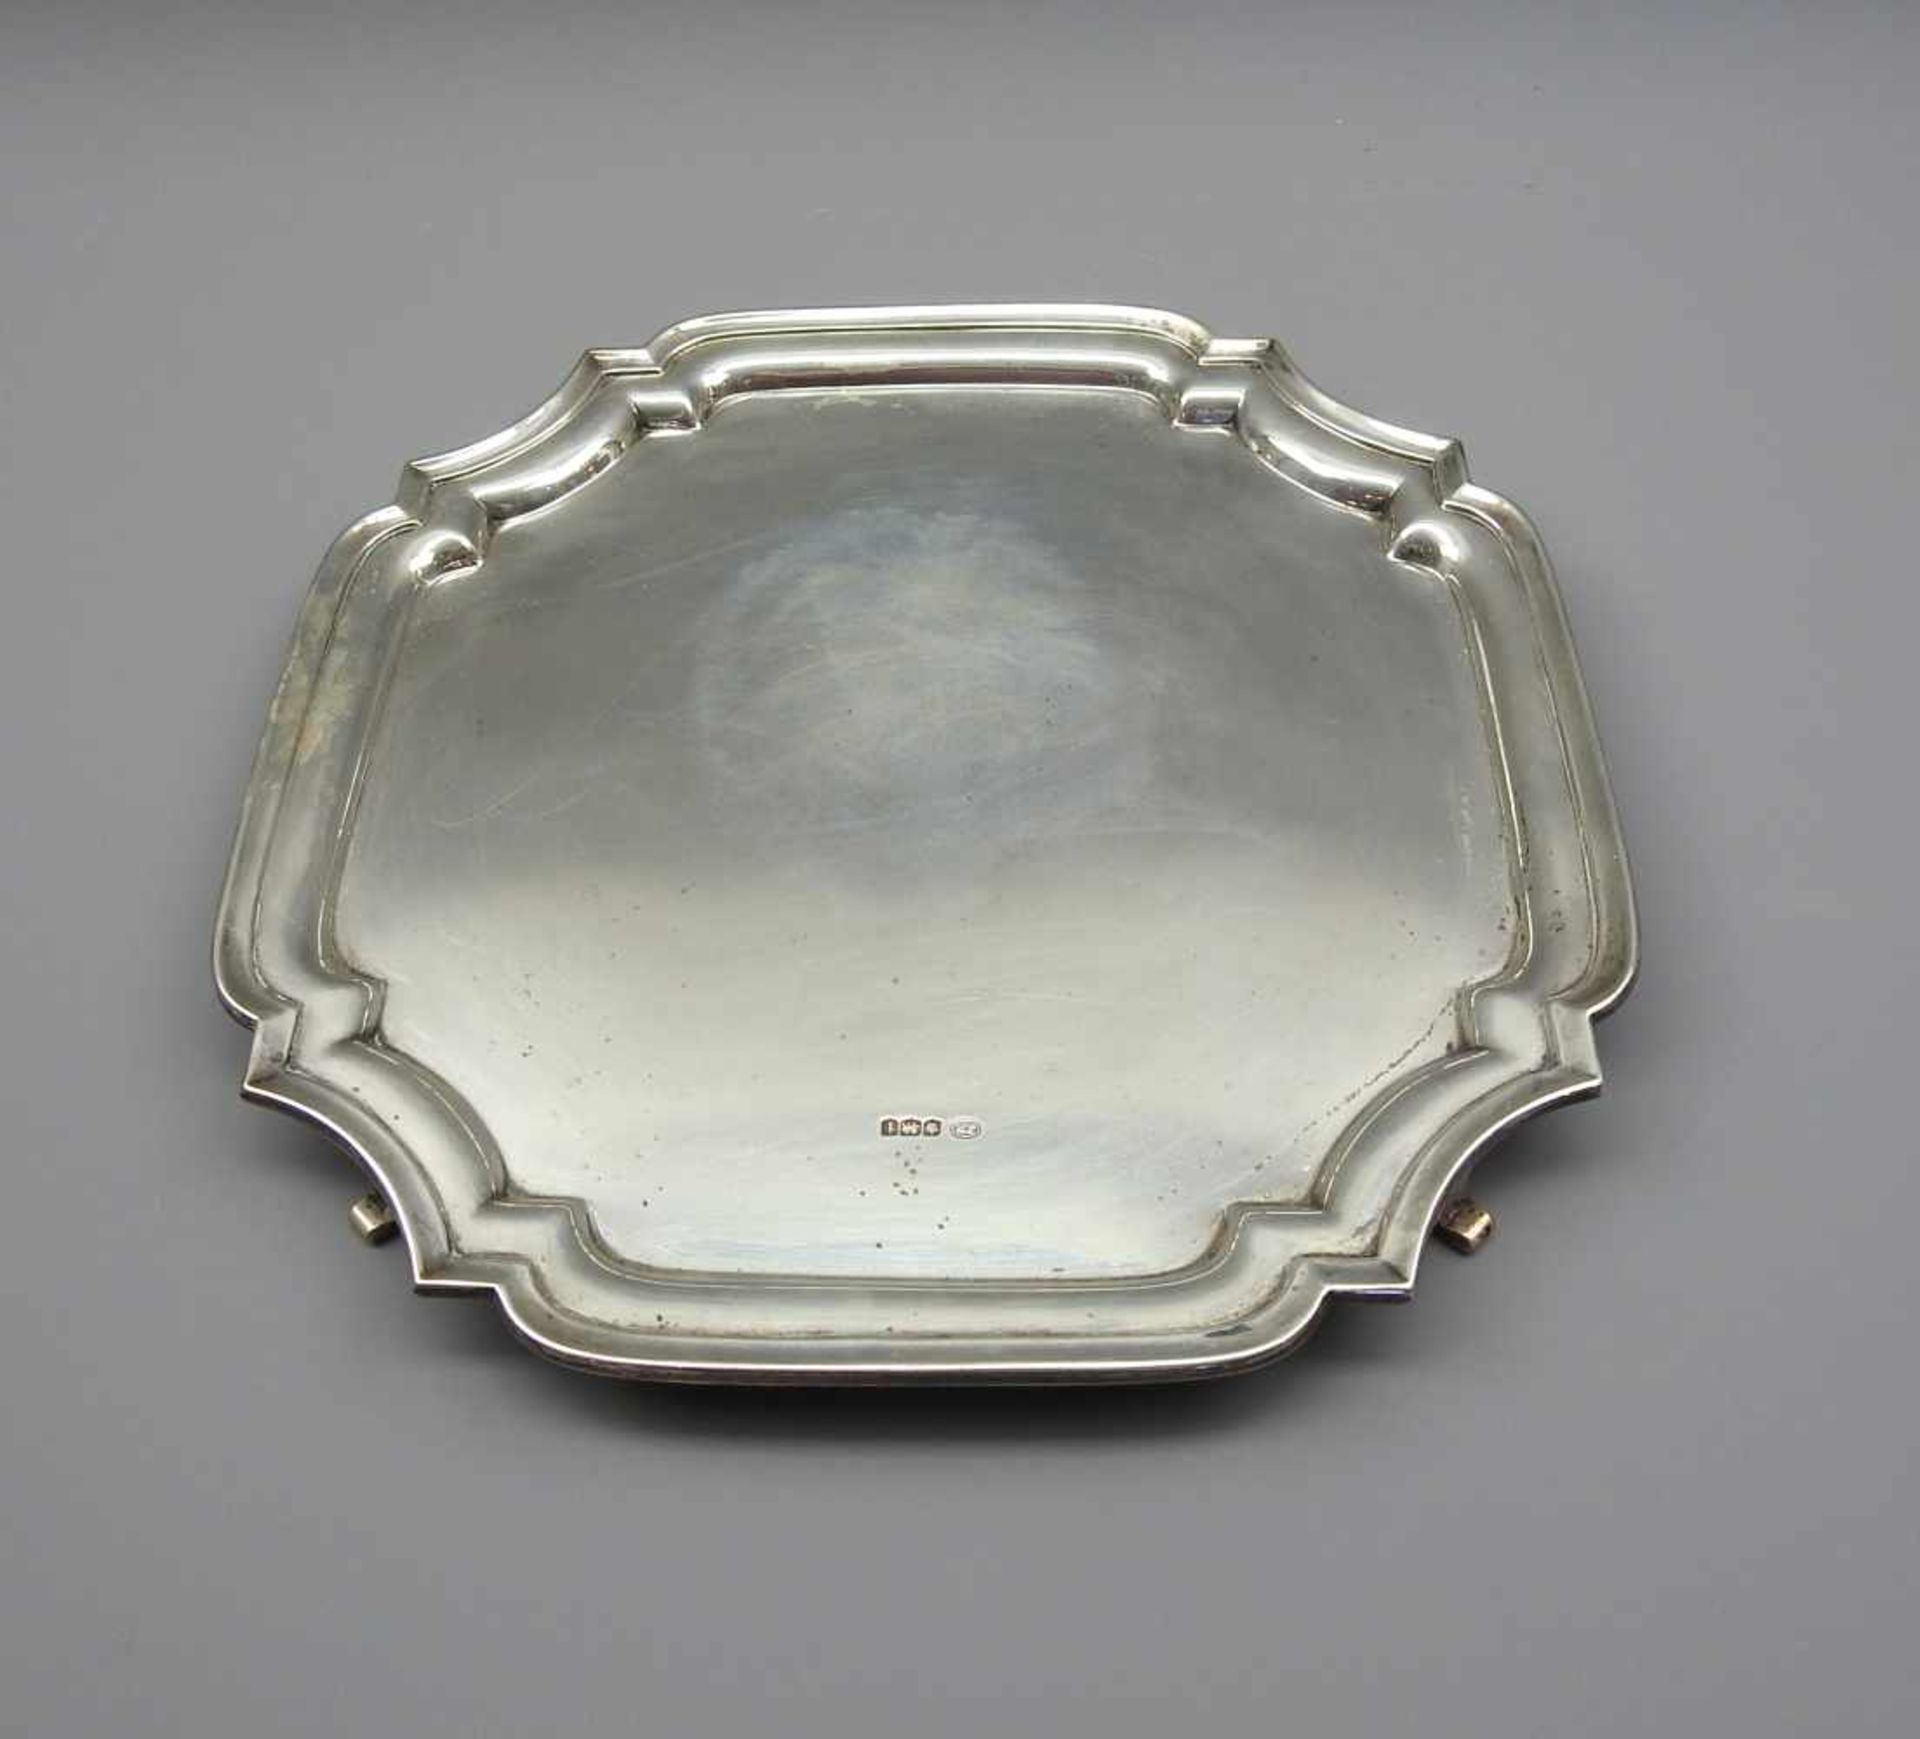 Sheffielder Silber-TablettSterling Silber 925, im Spiegel mit Manufakturstempel John Round, Krone